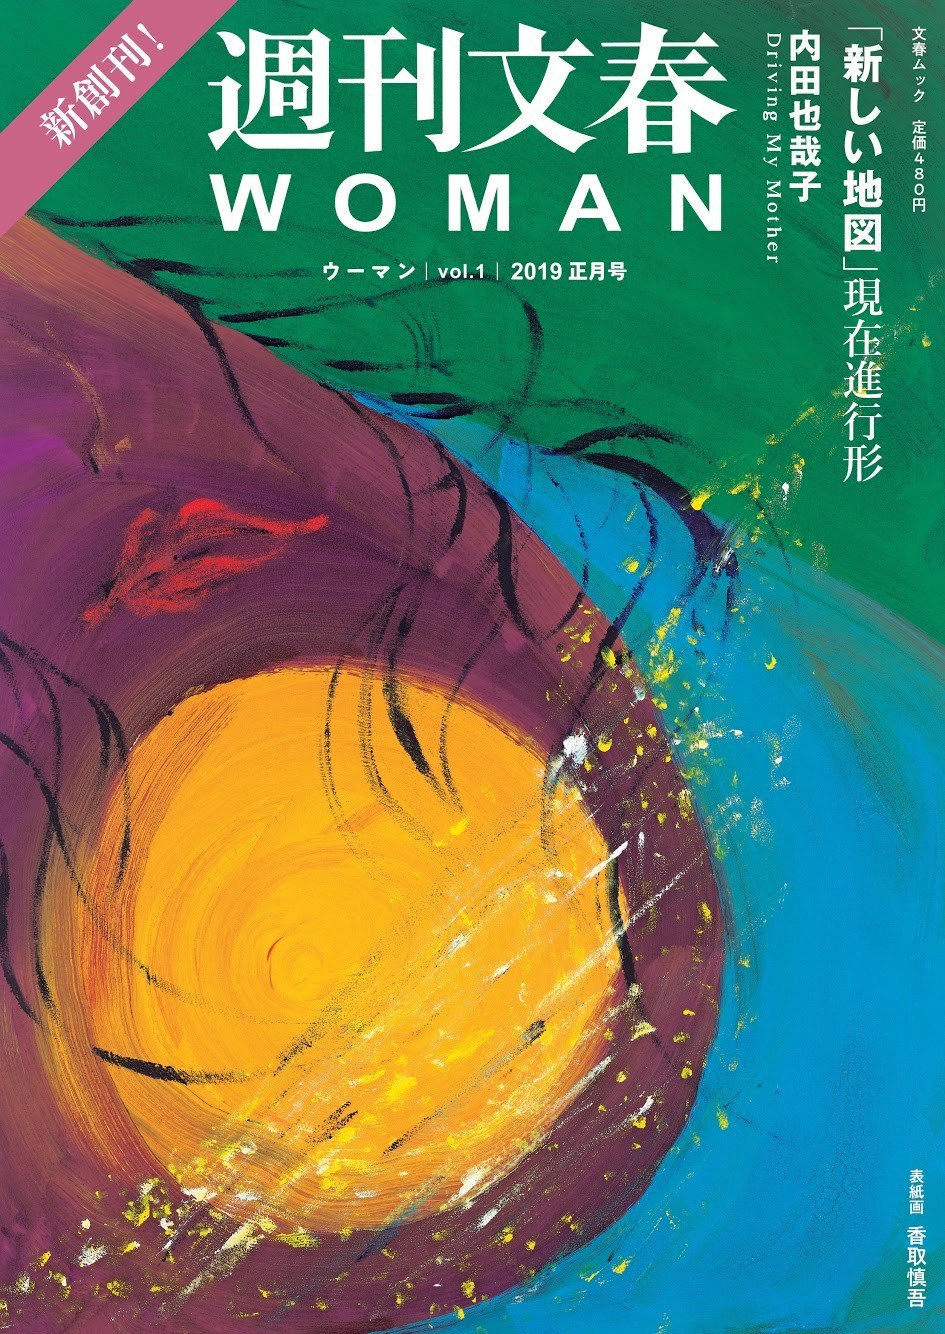 香取慎吾さんが描いた「週刊文春WOMAN」2019正月号の表紙画